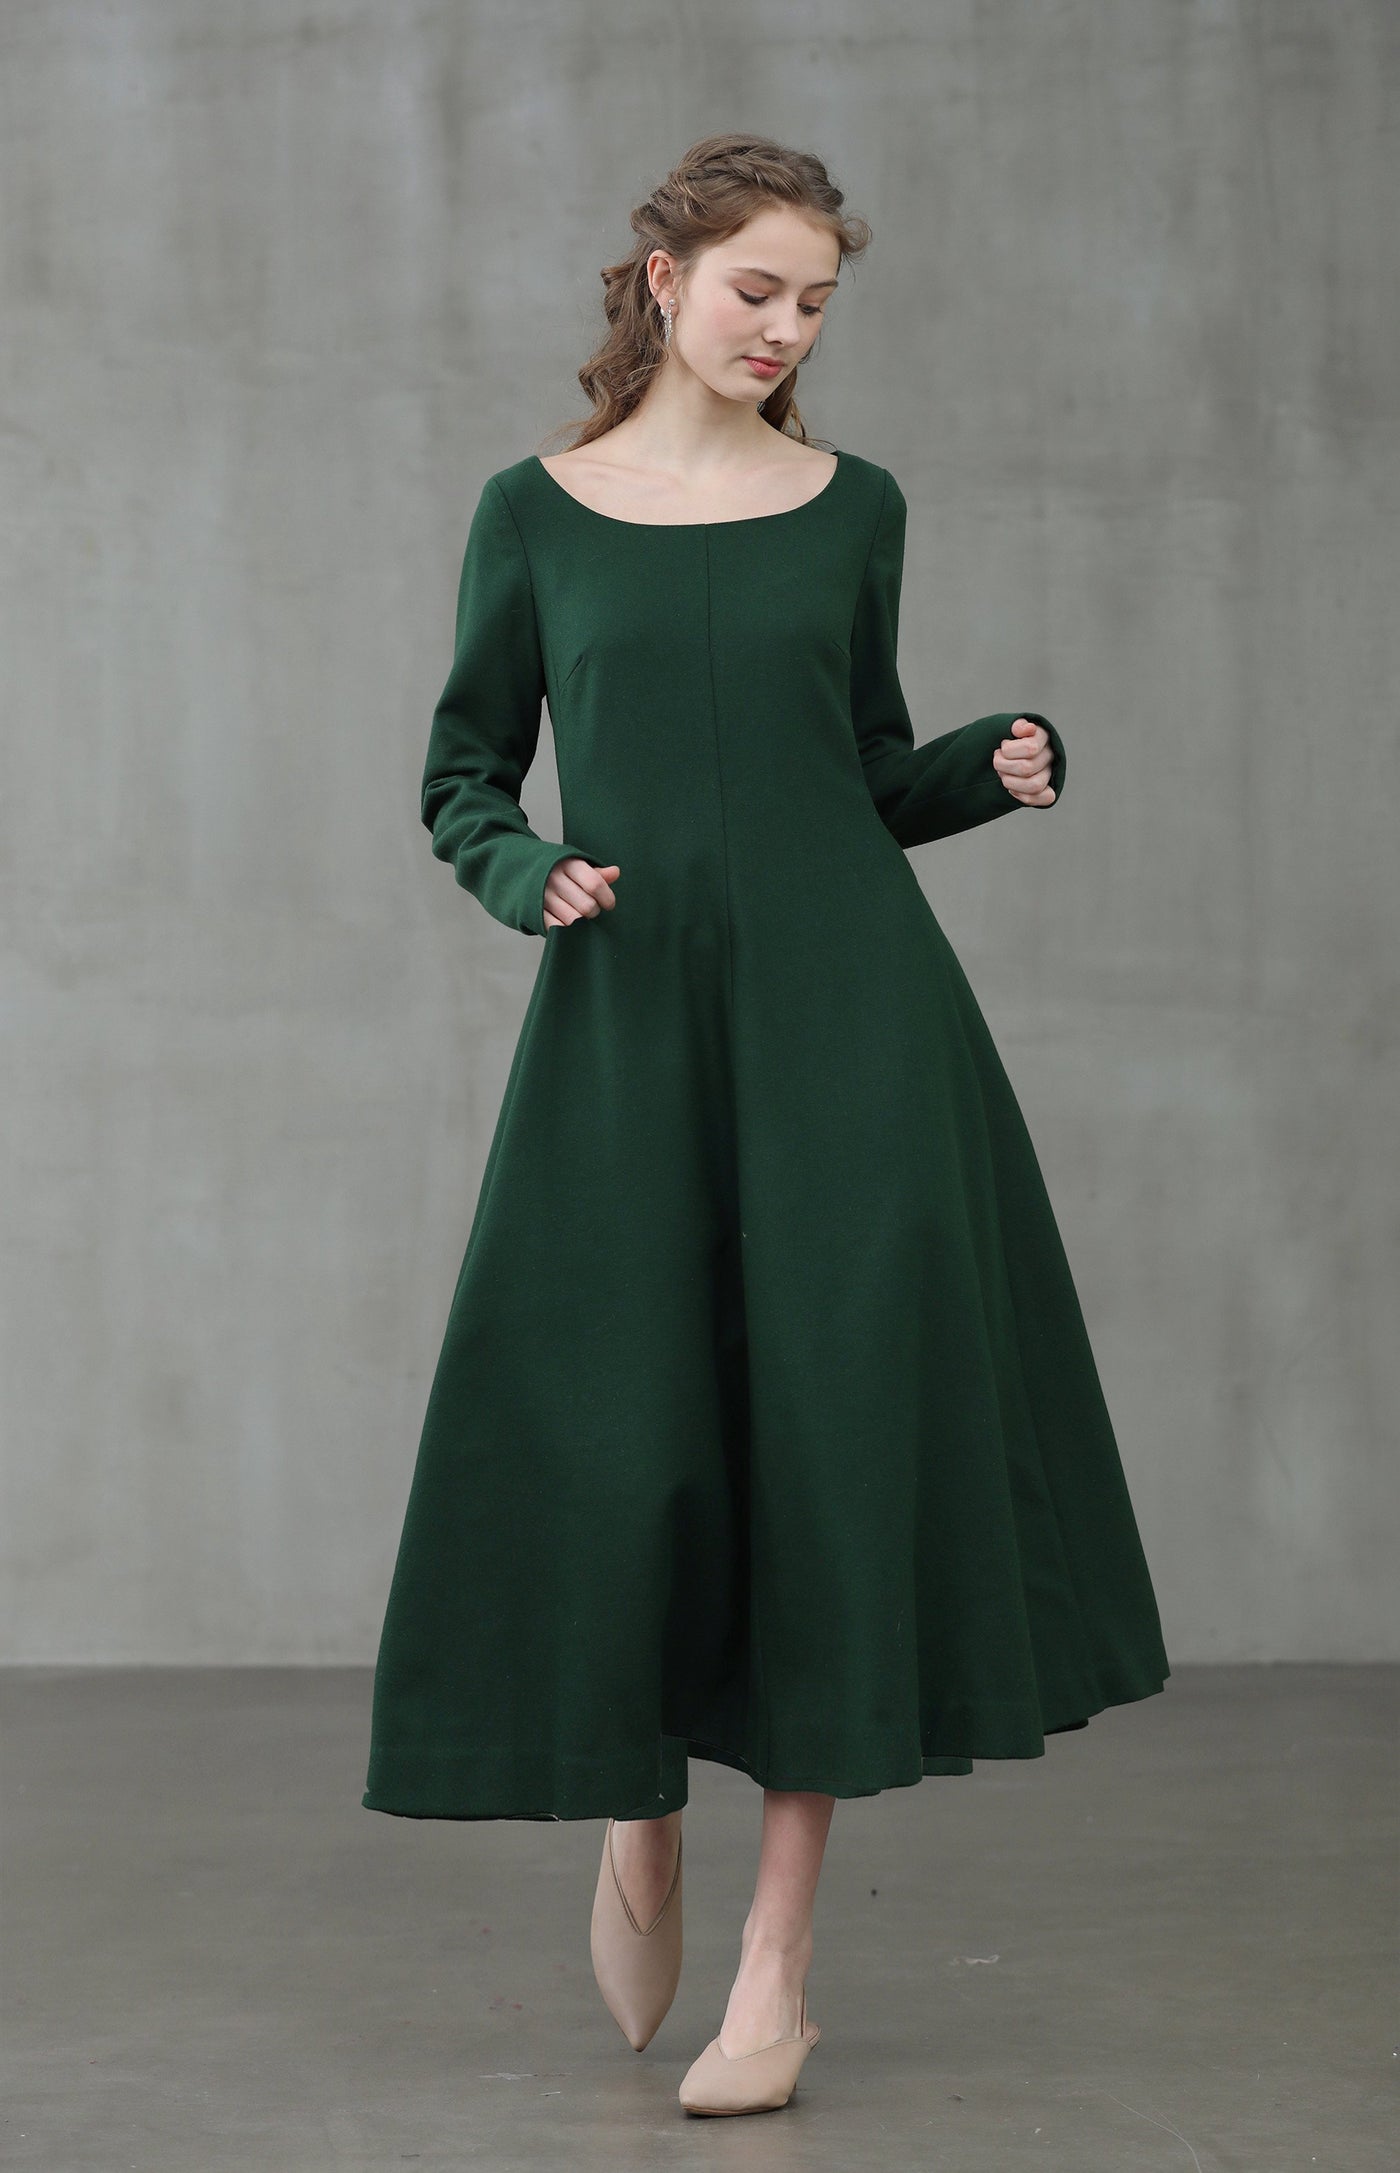 Mistletoe 17 | 100% wool green dress